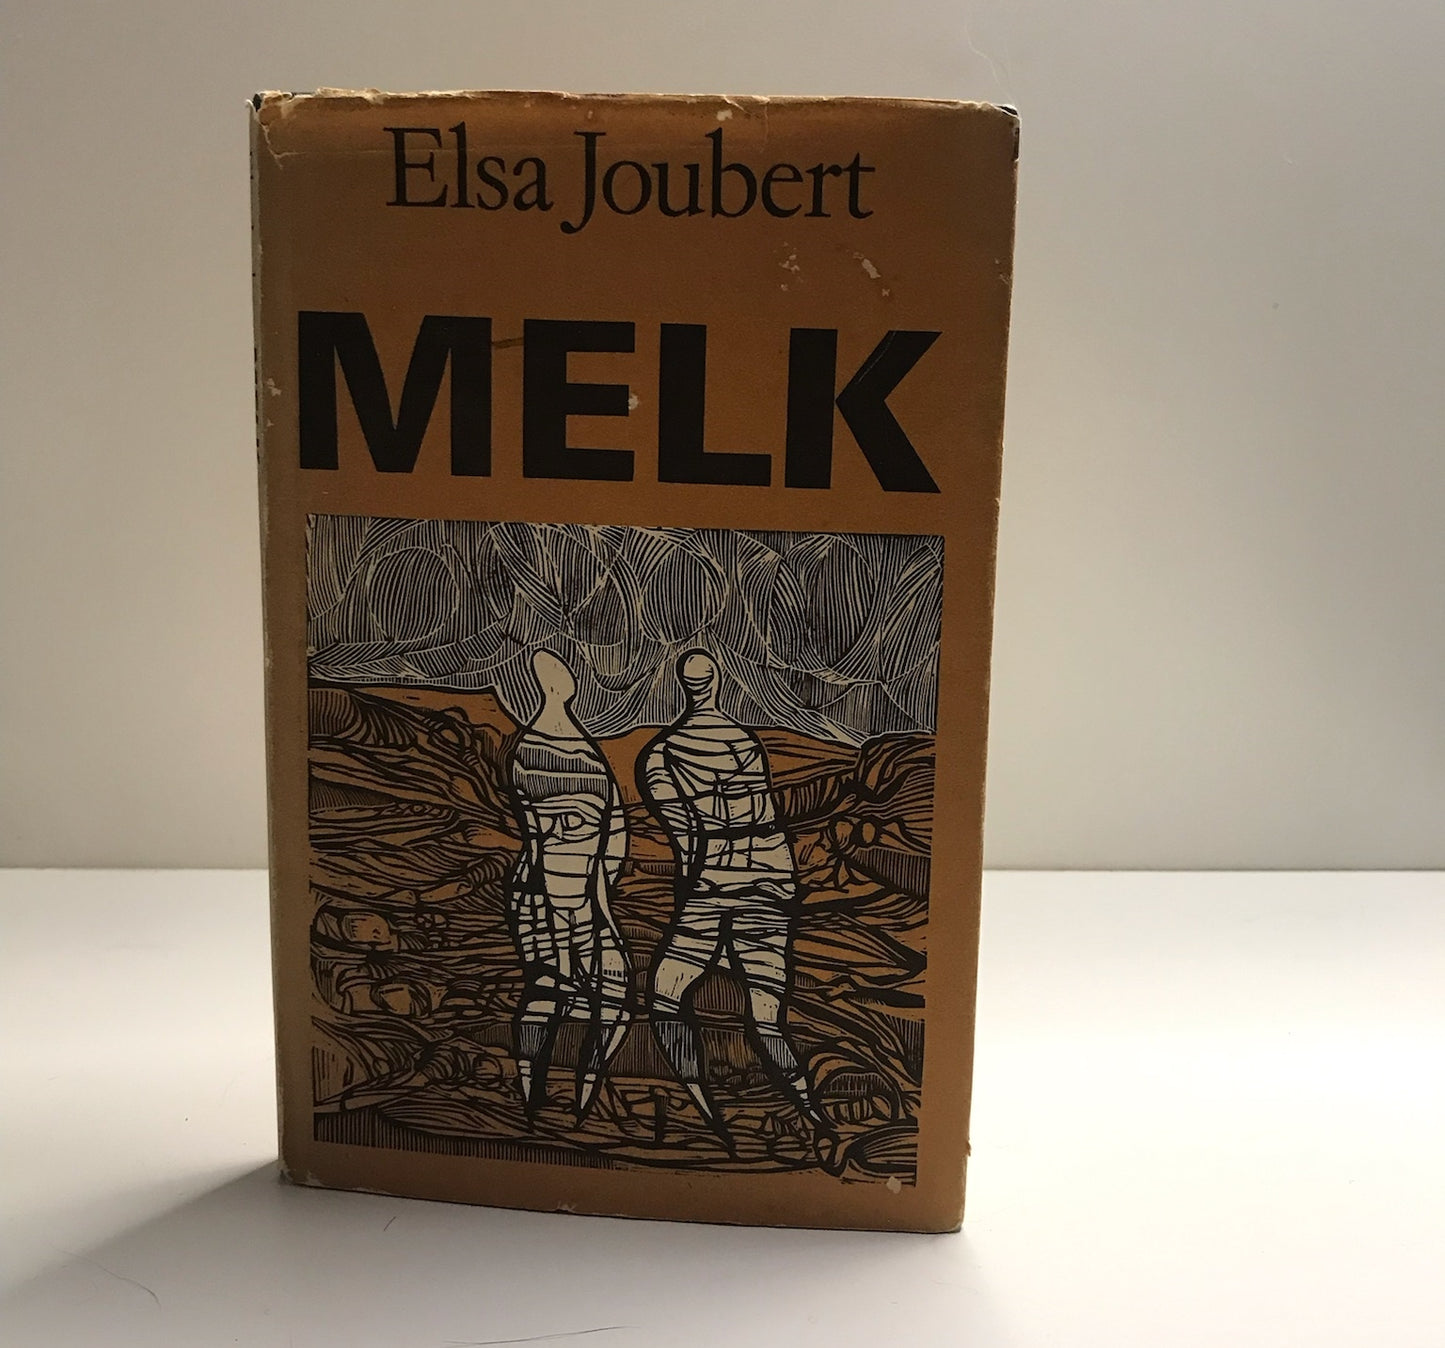 Melk - Elsa Joubert (First edition)